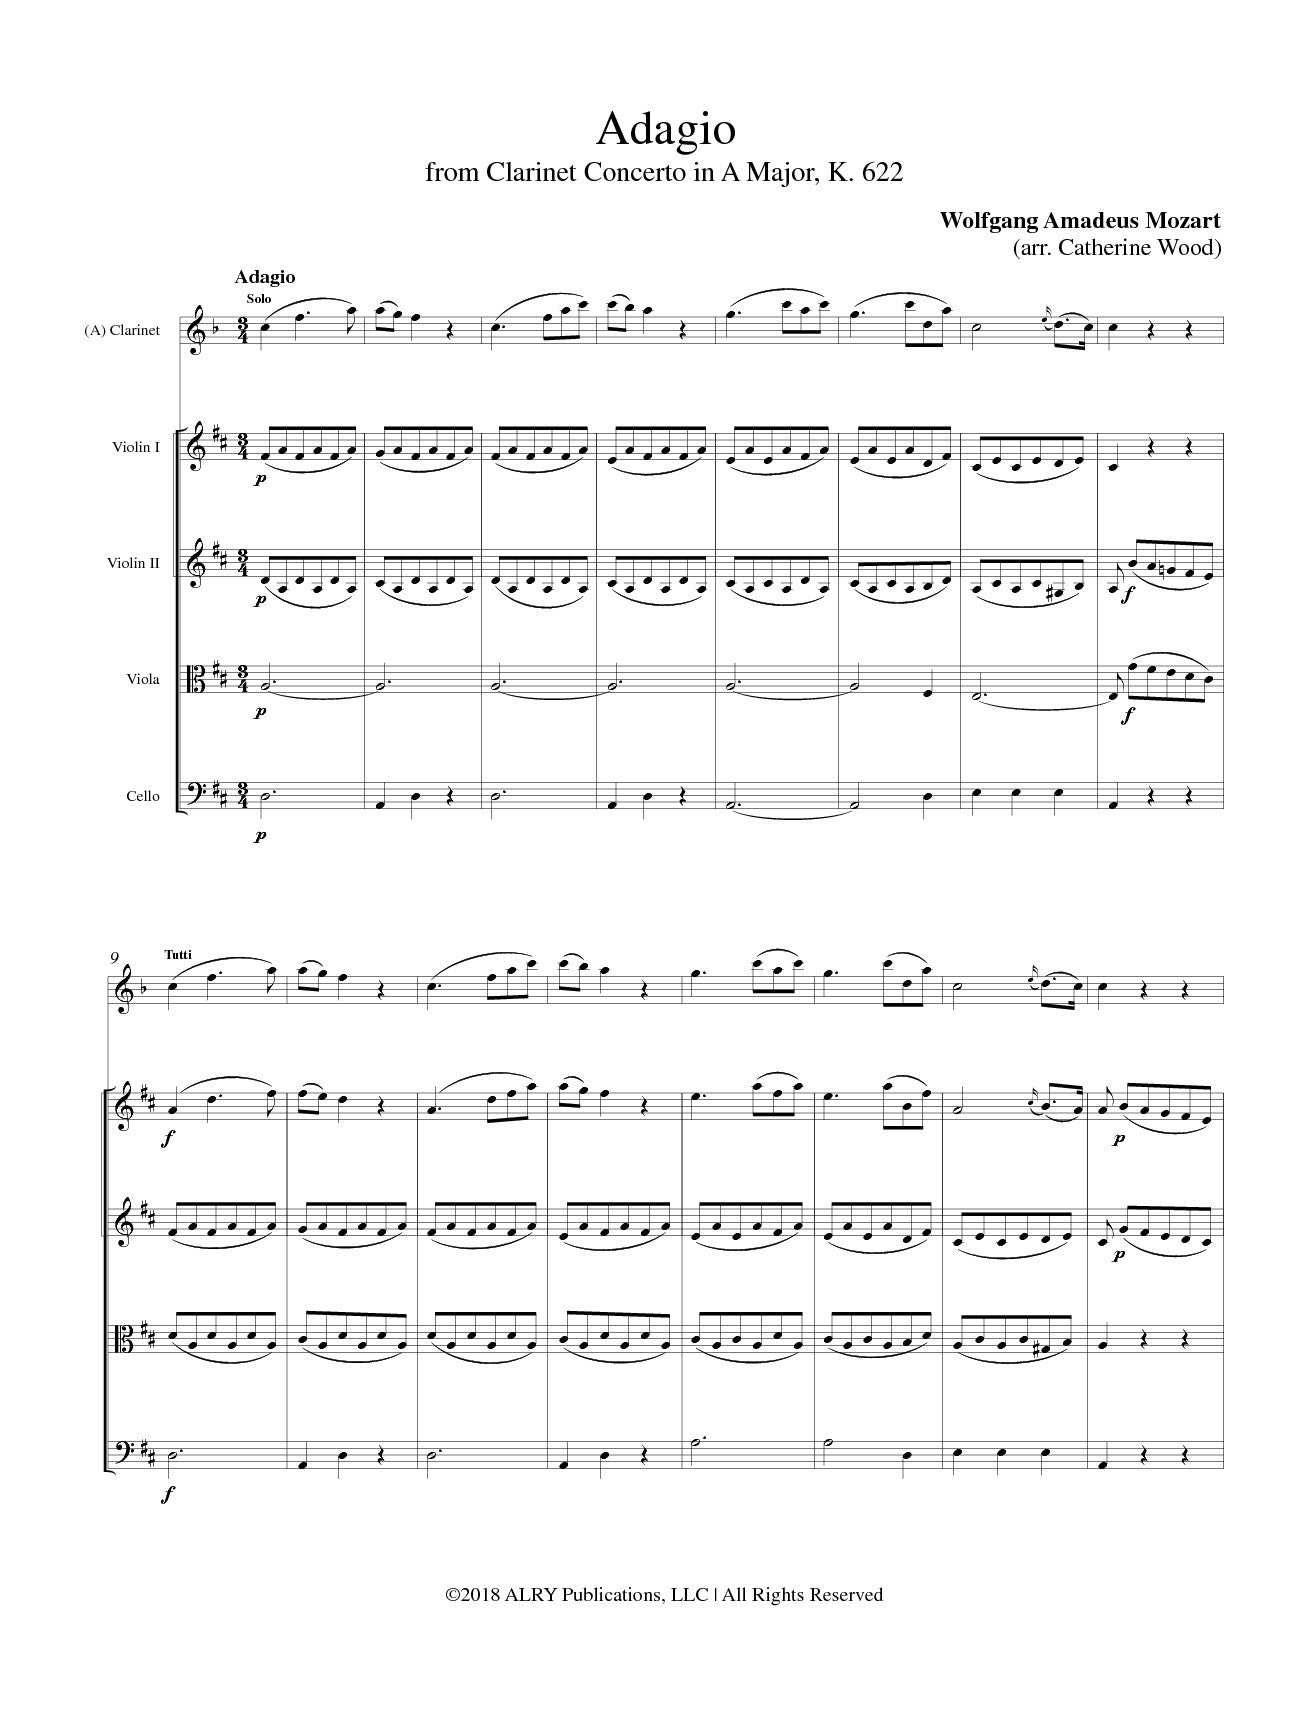 Mozart - Adagio from Clarinet Concerto in A Major, K. 622